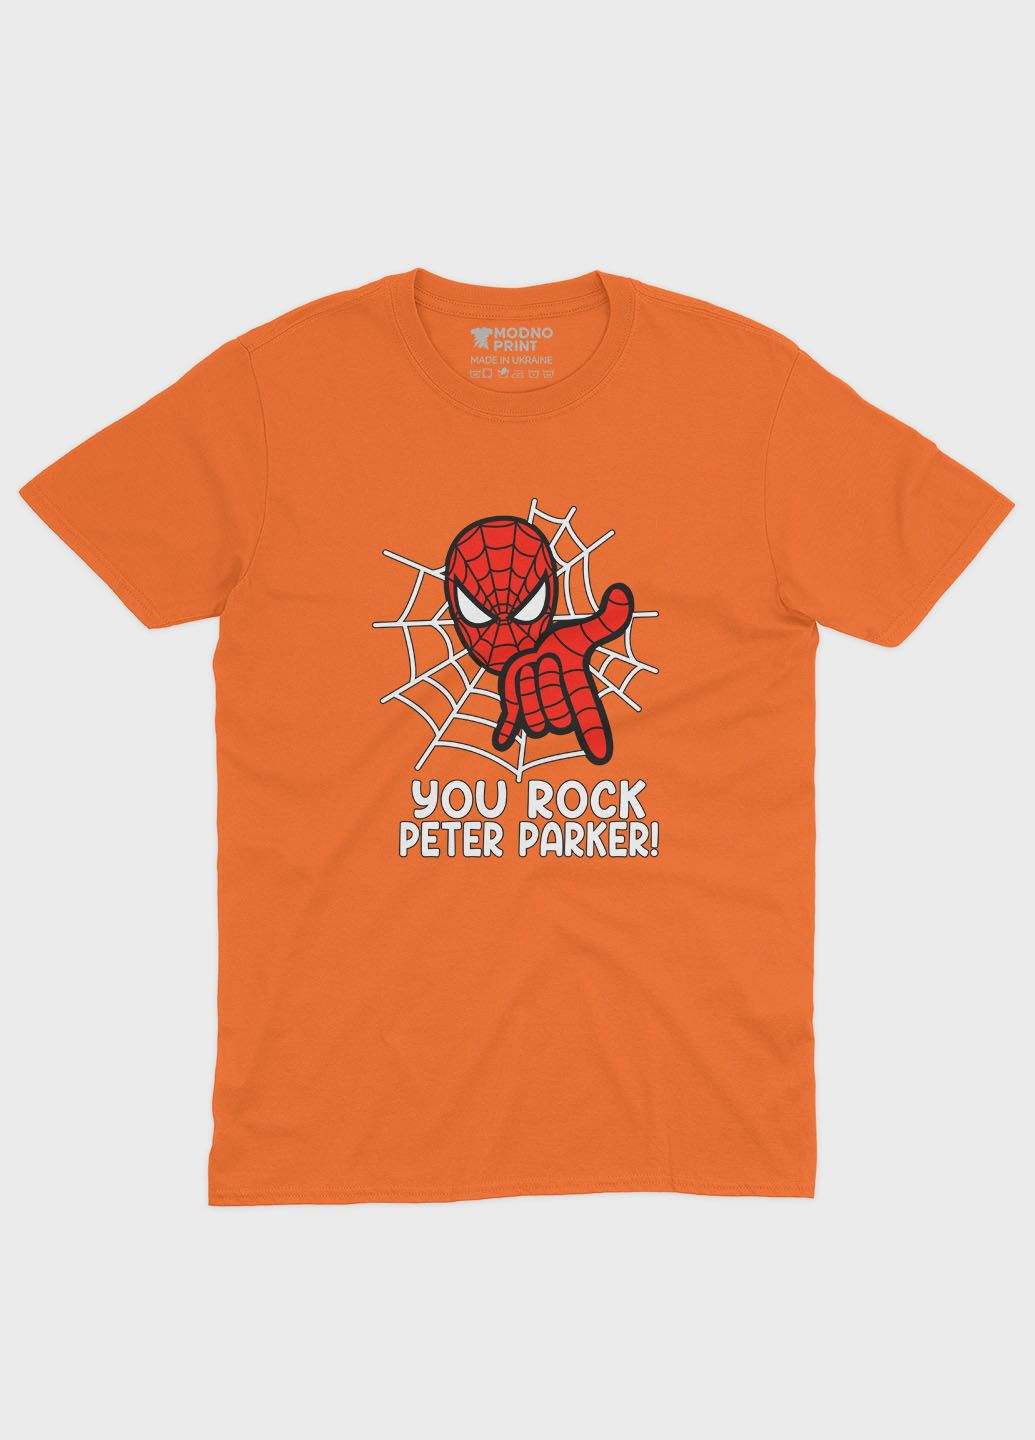 Оранжевая демисезонная футболка для девочки с принтом супергероя - человек-паук (ts001-1-ora-006-014-102-g) Modno